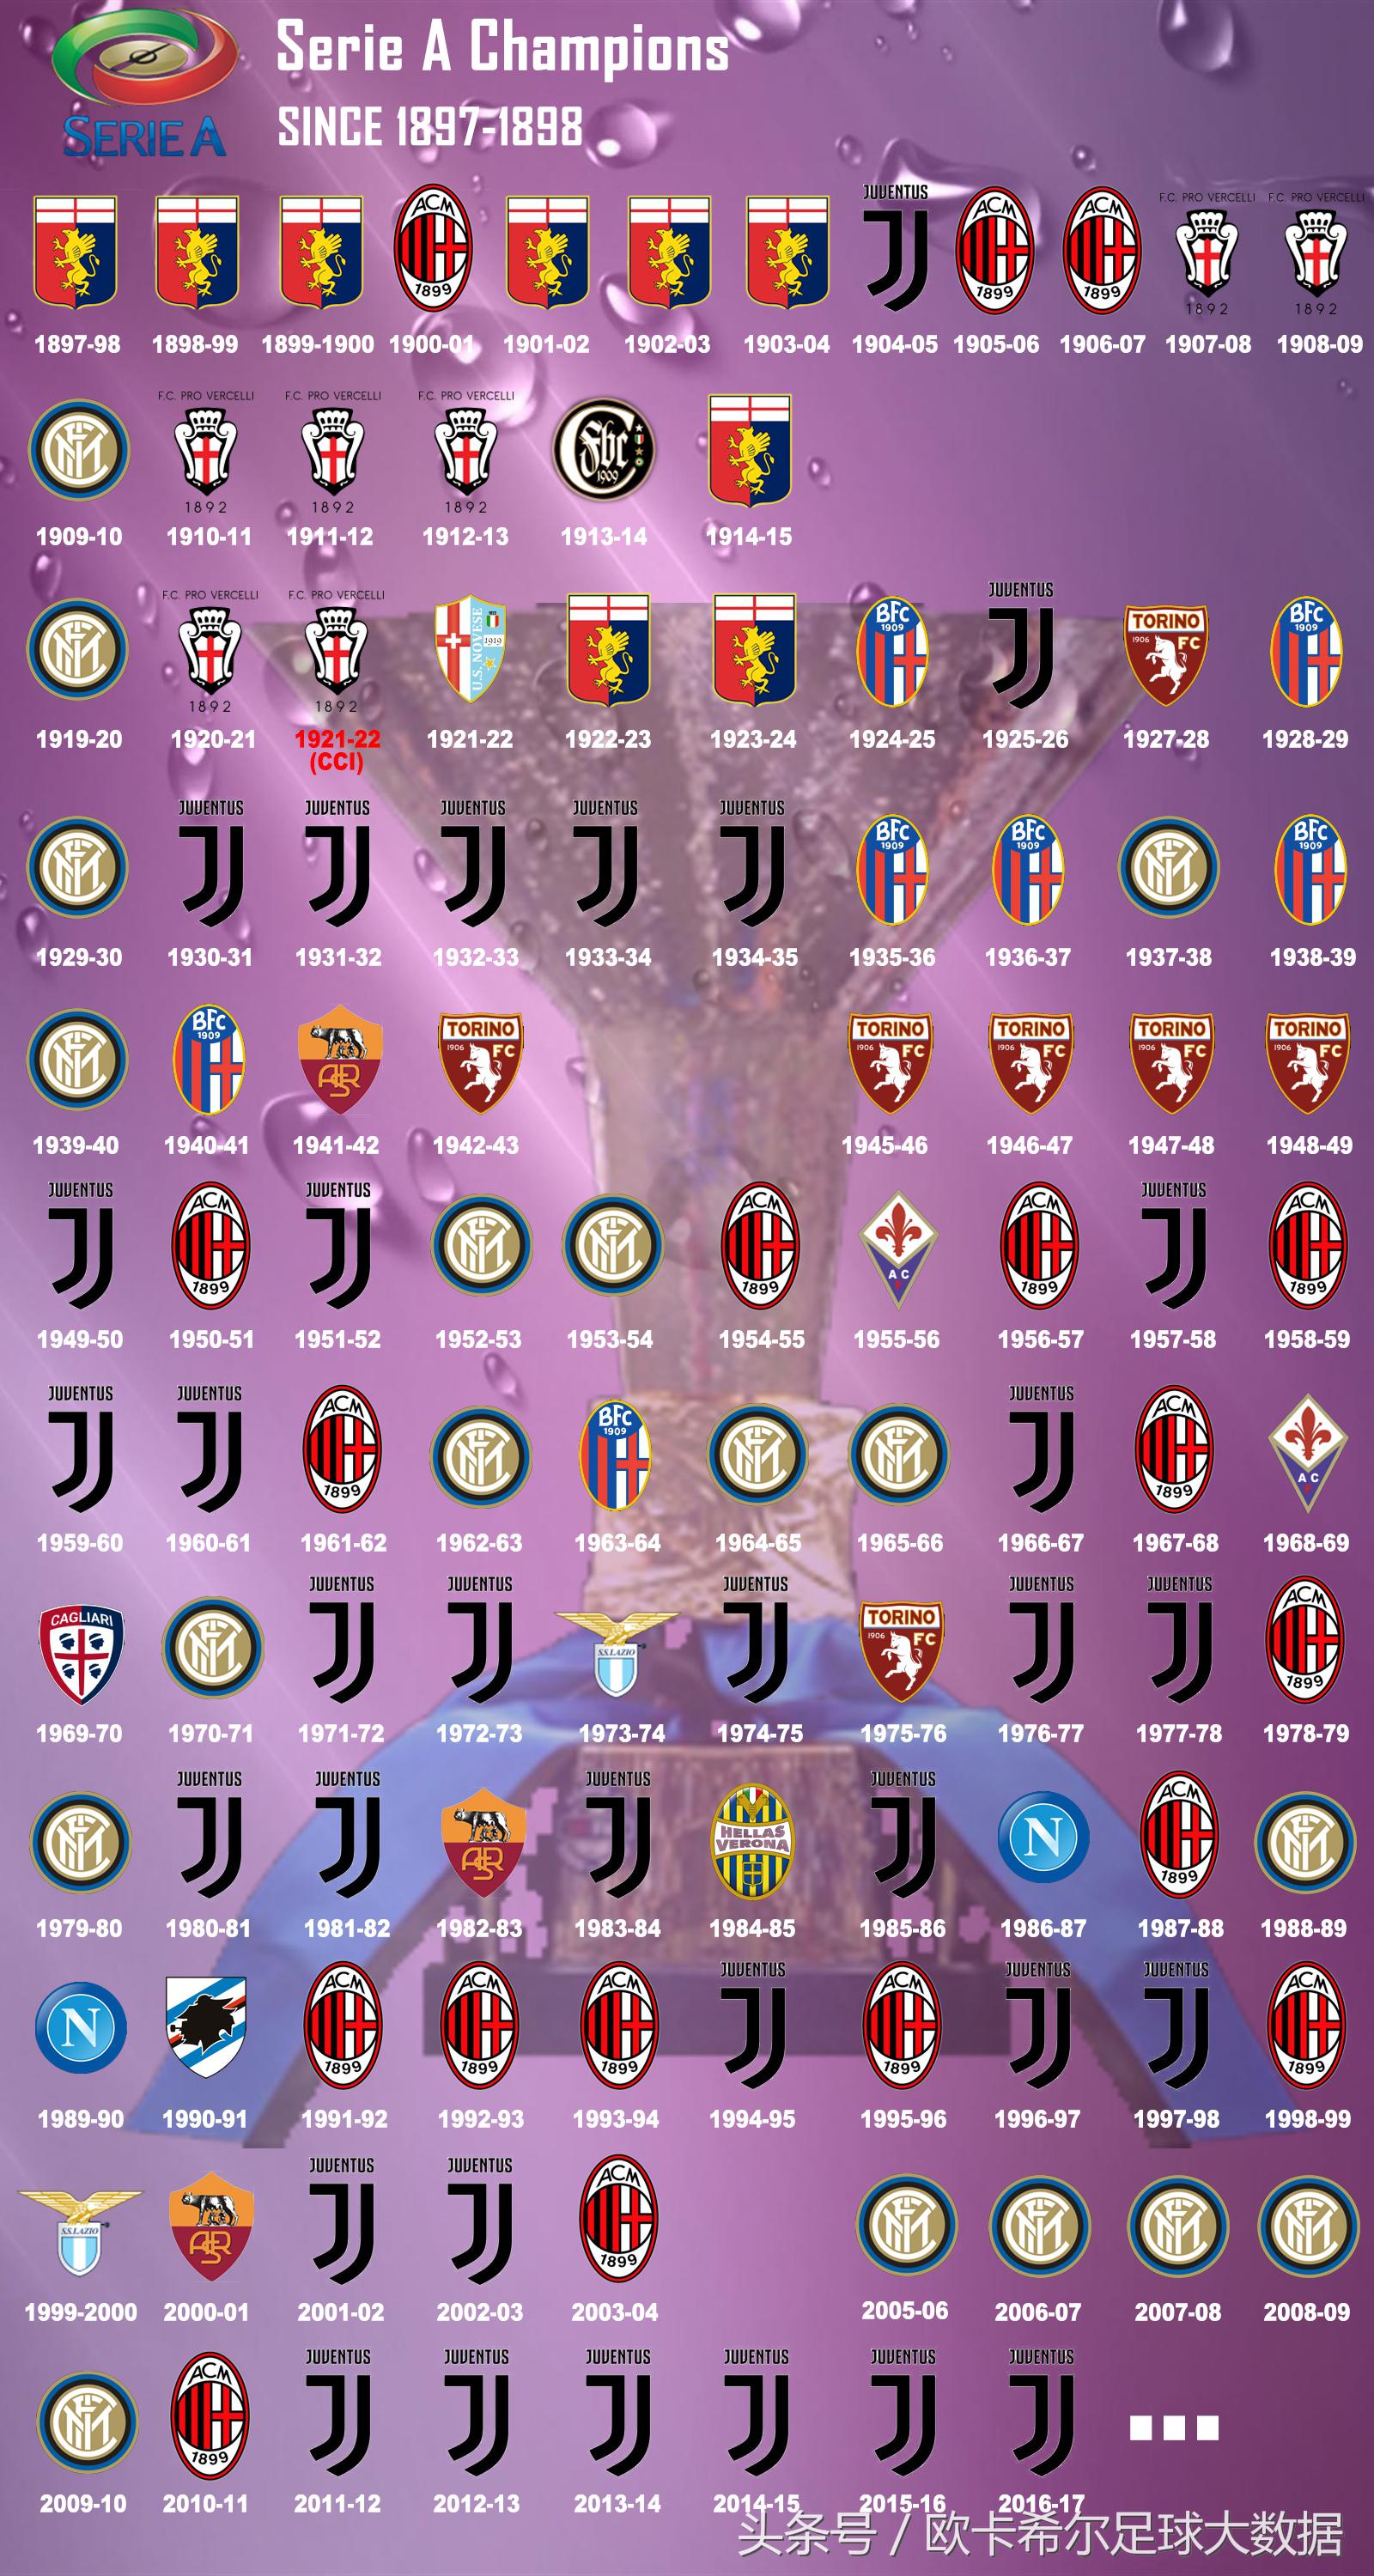 意甲一年几个赛季 一张图看懂意甲联赛历年冠军(2)